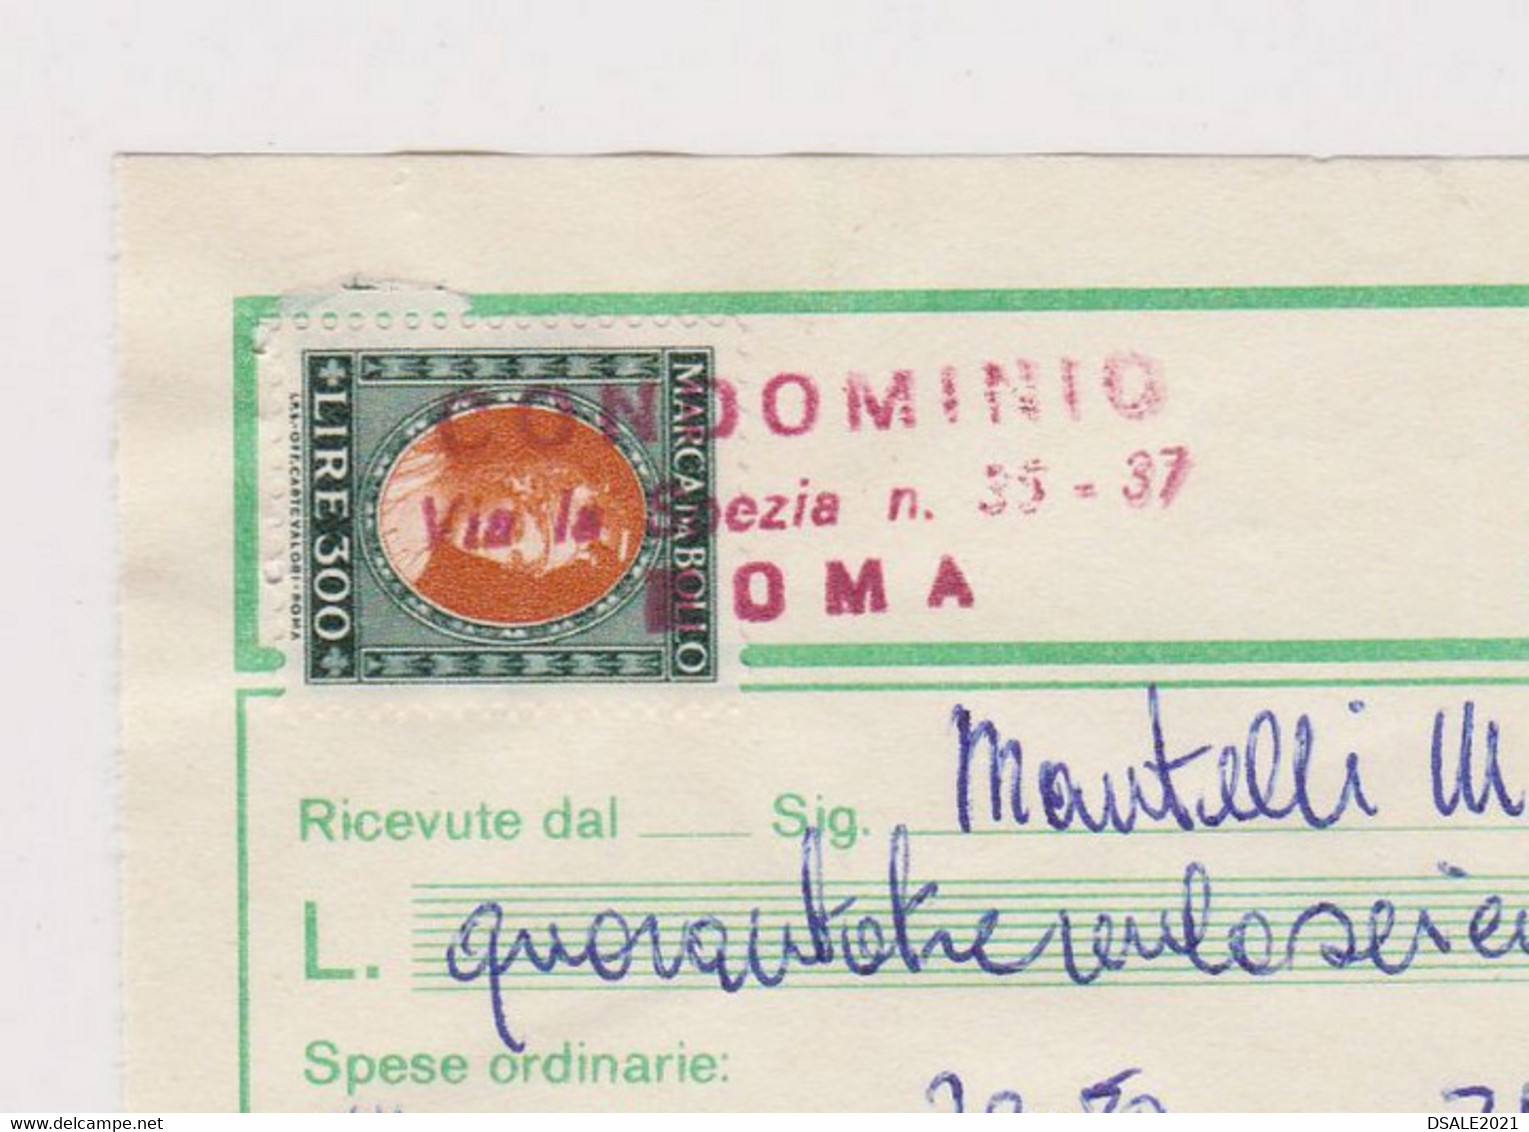 Italy Receipt Bill 1979 Italian 300Lire Marca Da Bollo, Revenue Fiscal Stamps, Ricevute Di Condominio (39505) - Steuermarken